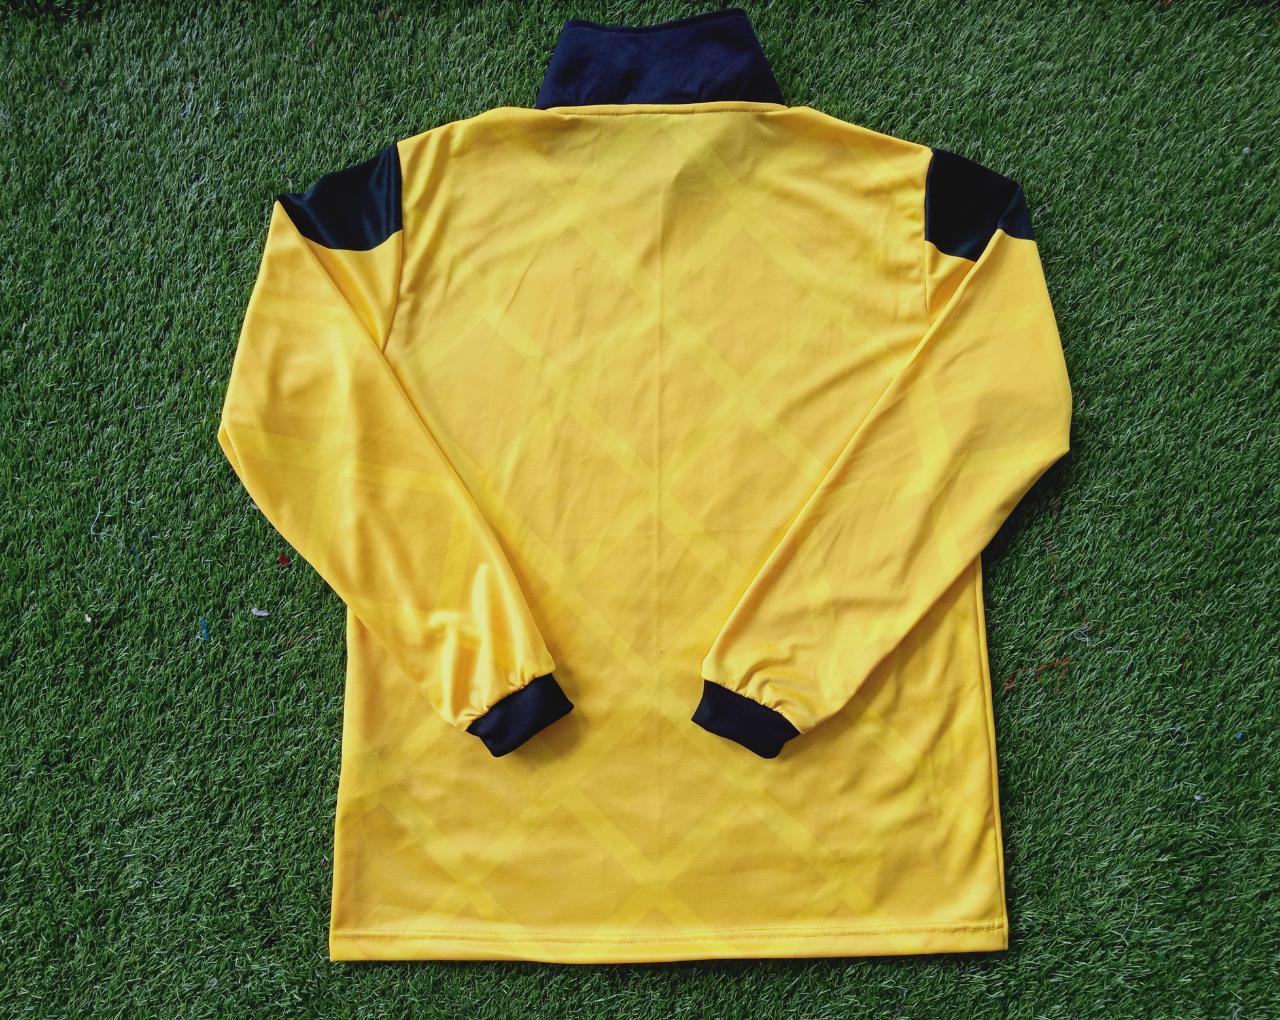 1990 England GK Peter Shilton Shirt